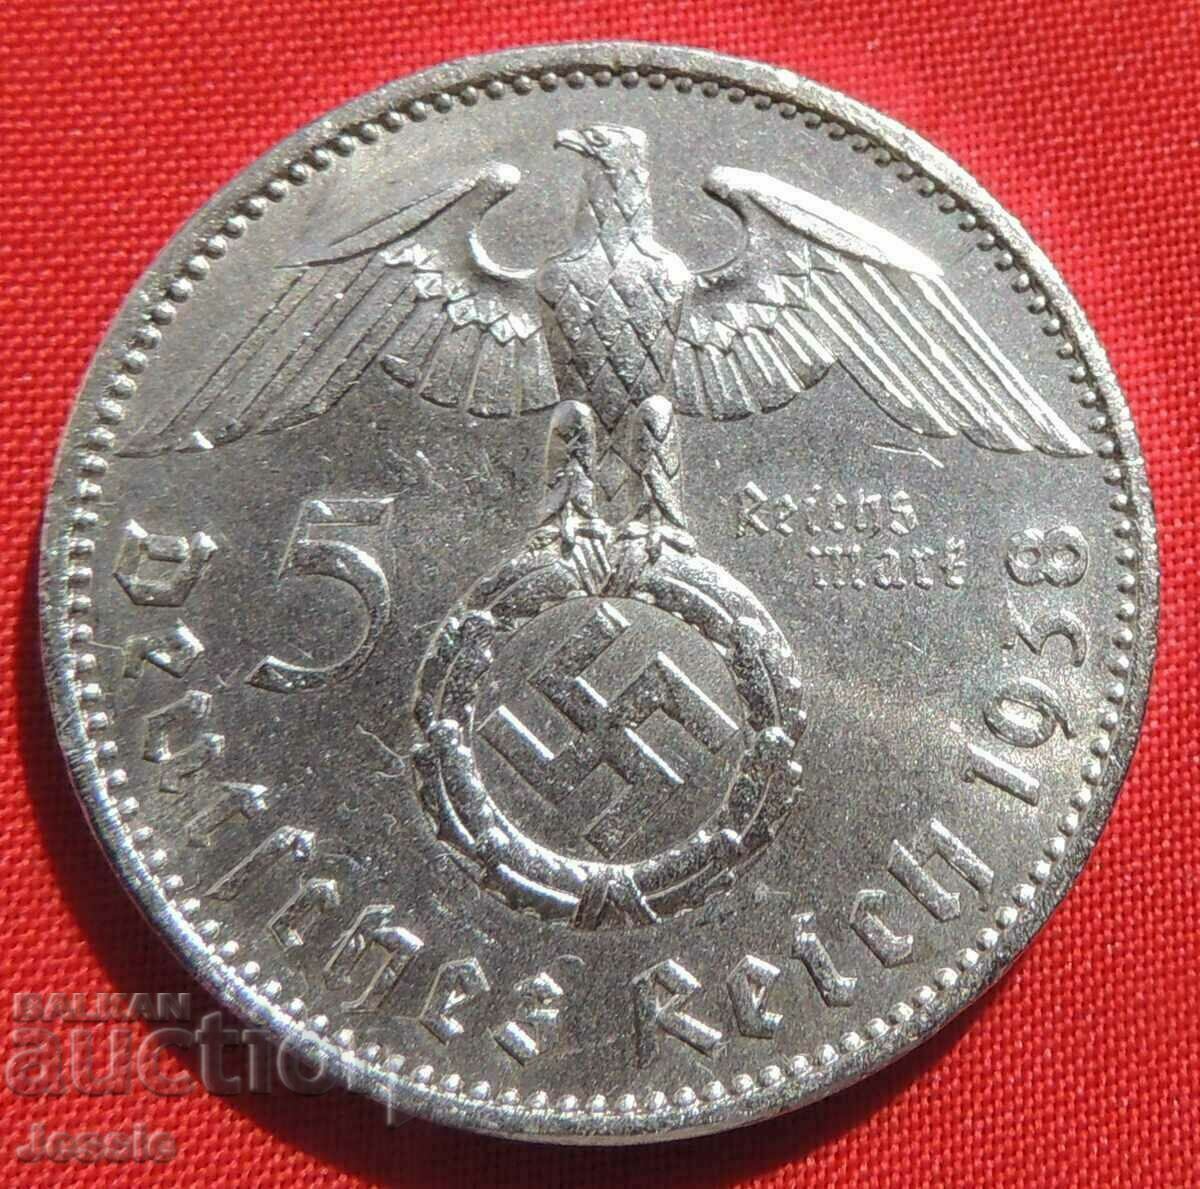 5 Reichsmarks 1938 Un argint german